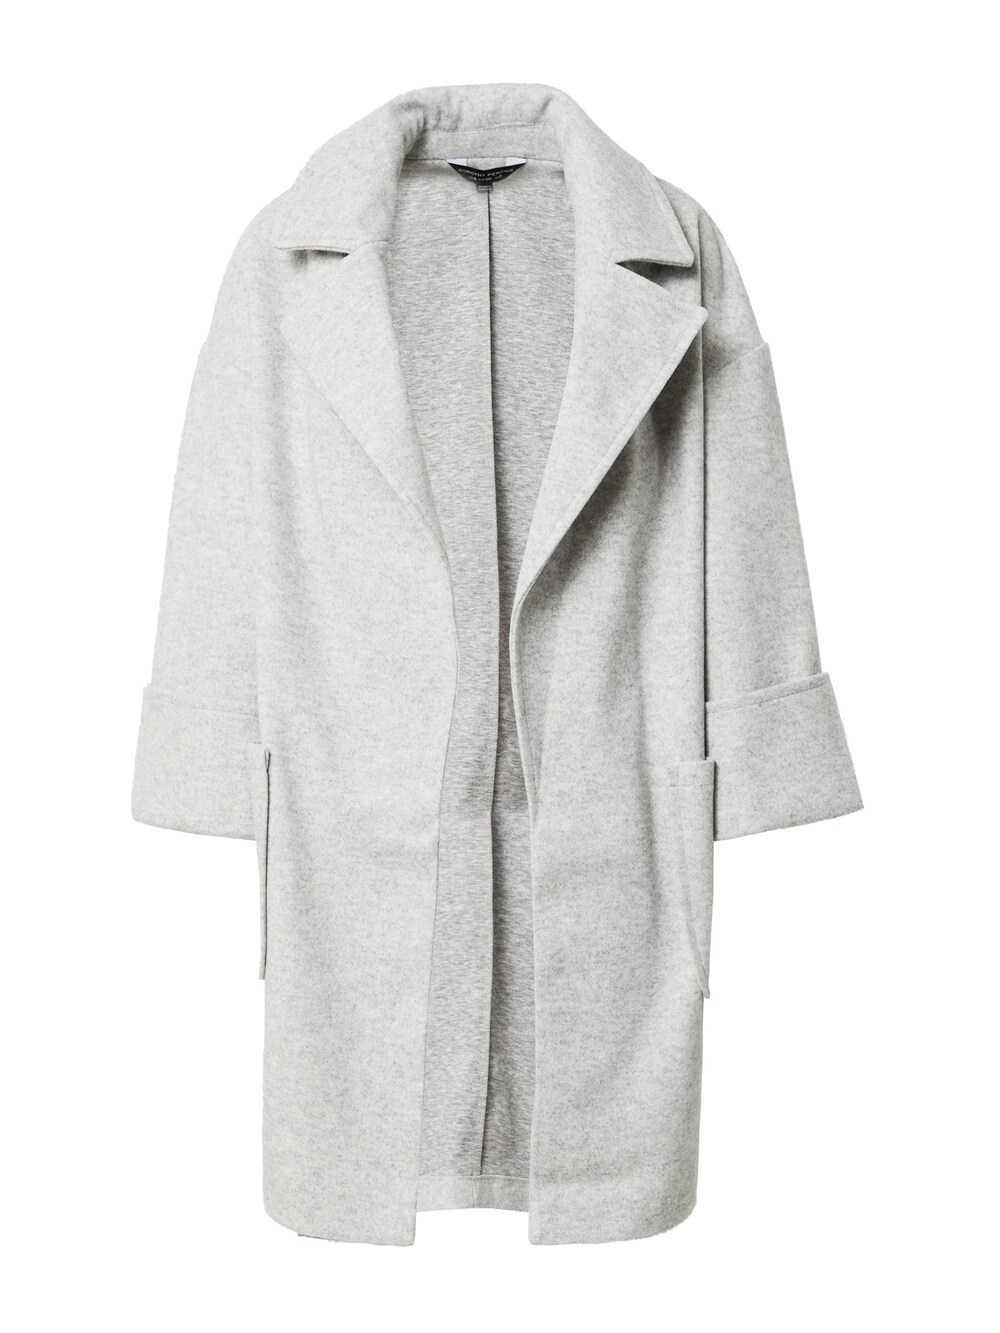 Межсезонное пальто Dorothy Perkins, серый межсезонное пальто dorothy perkins кэмел